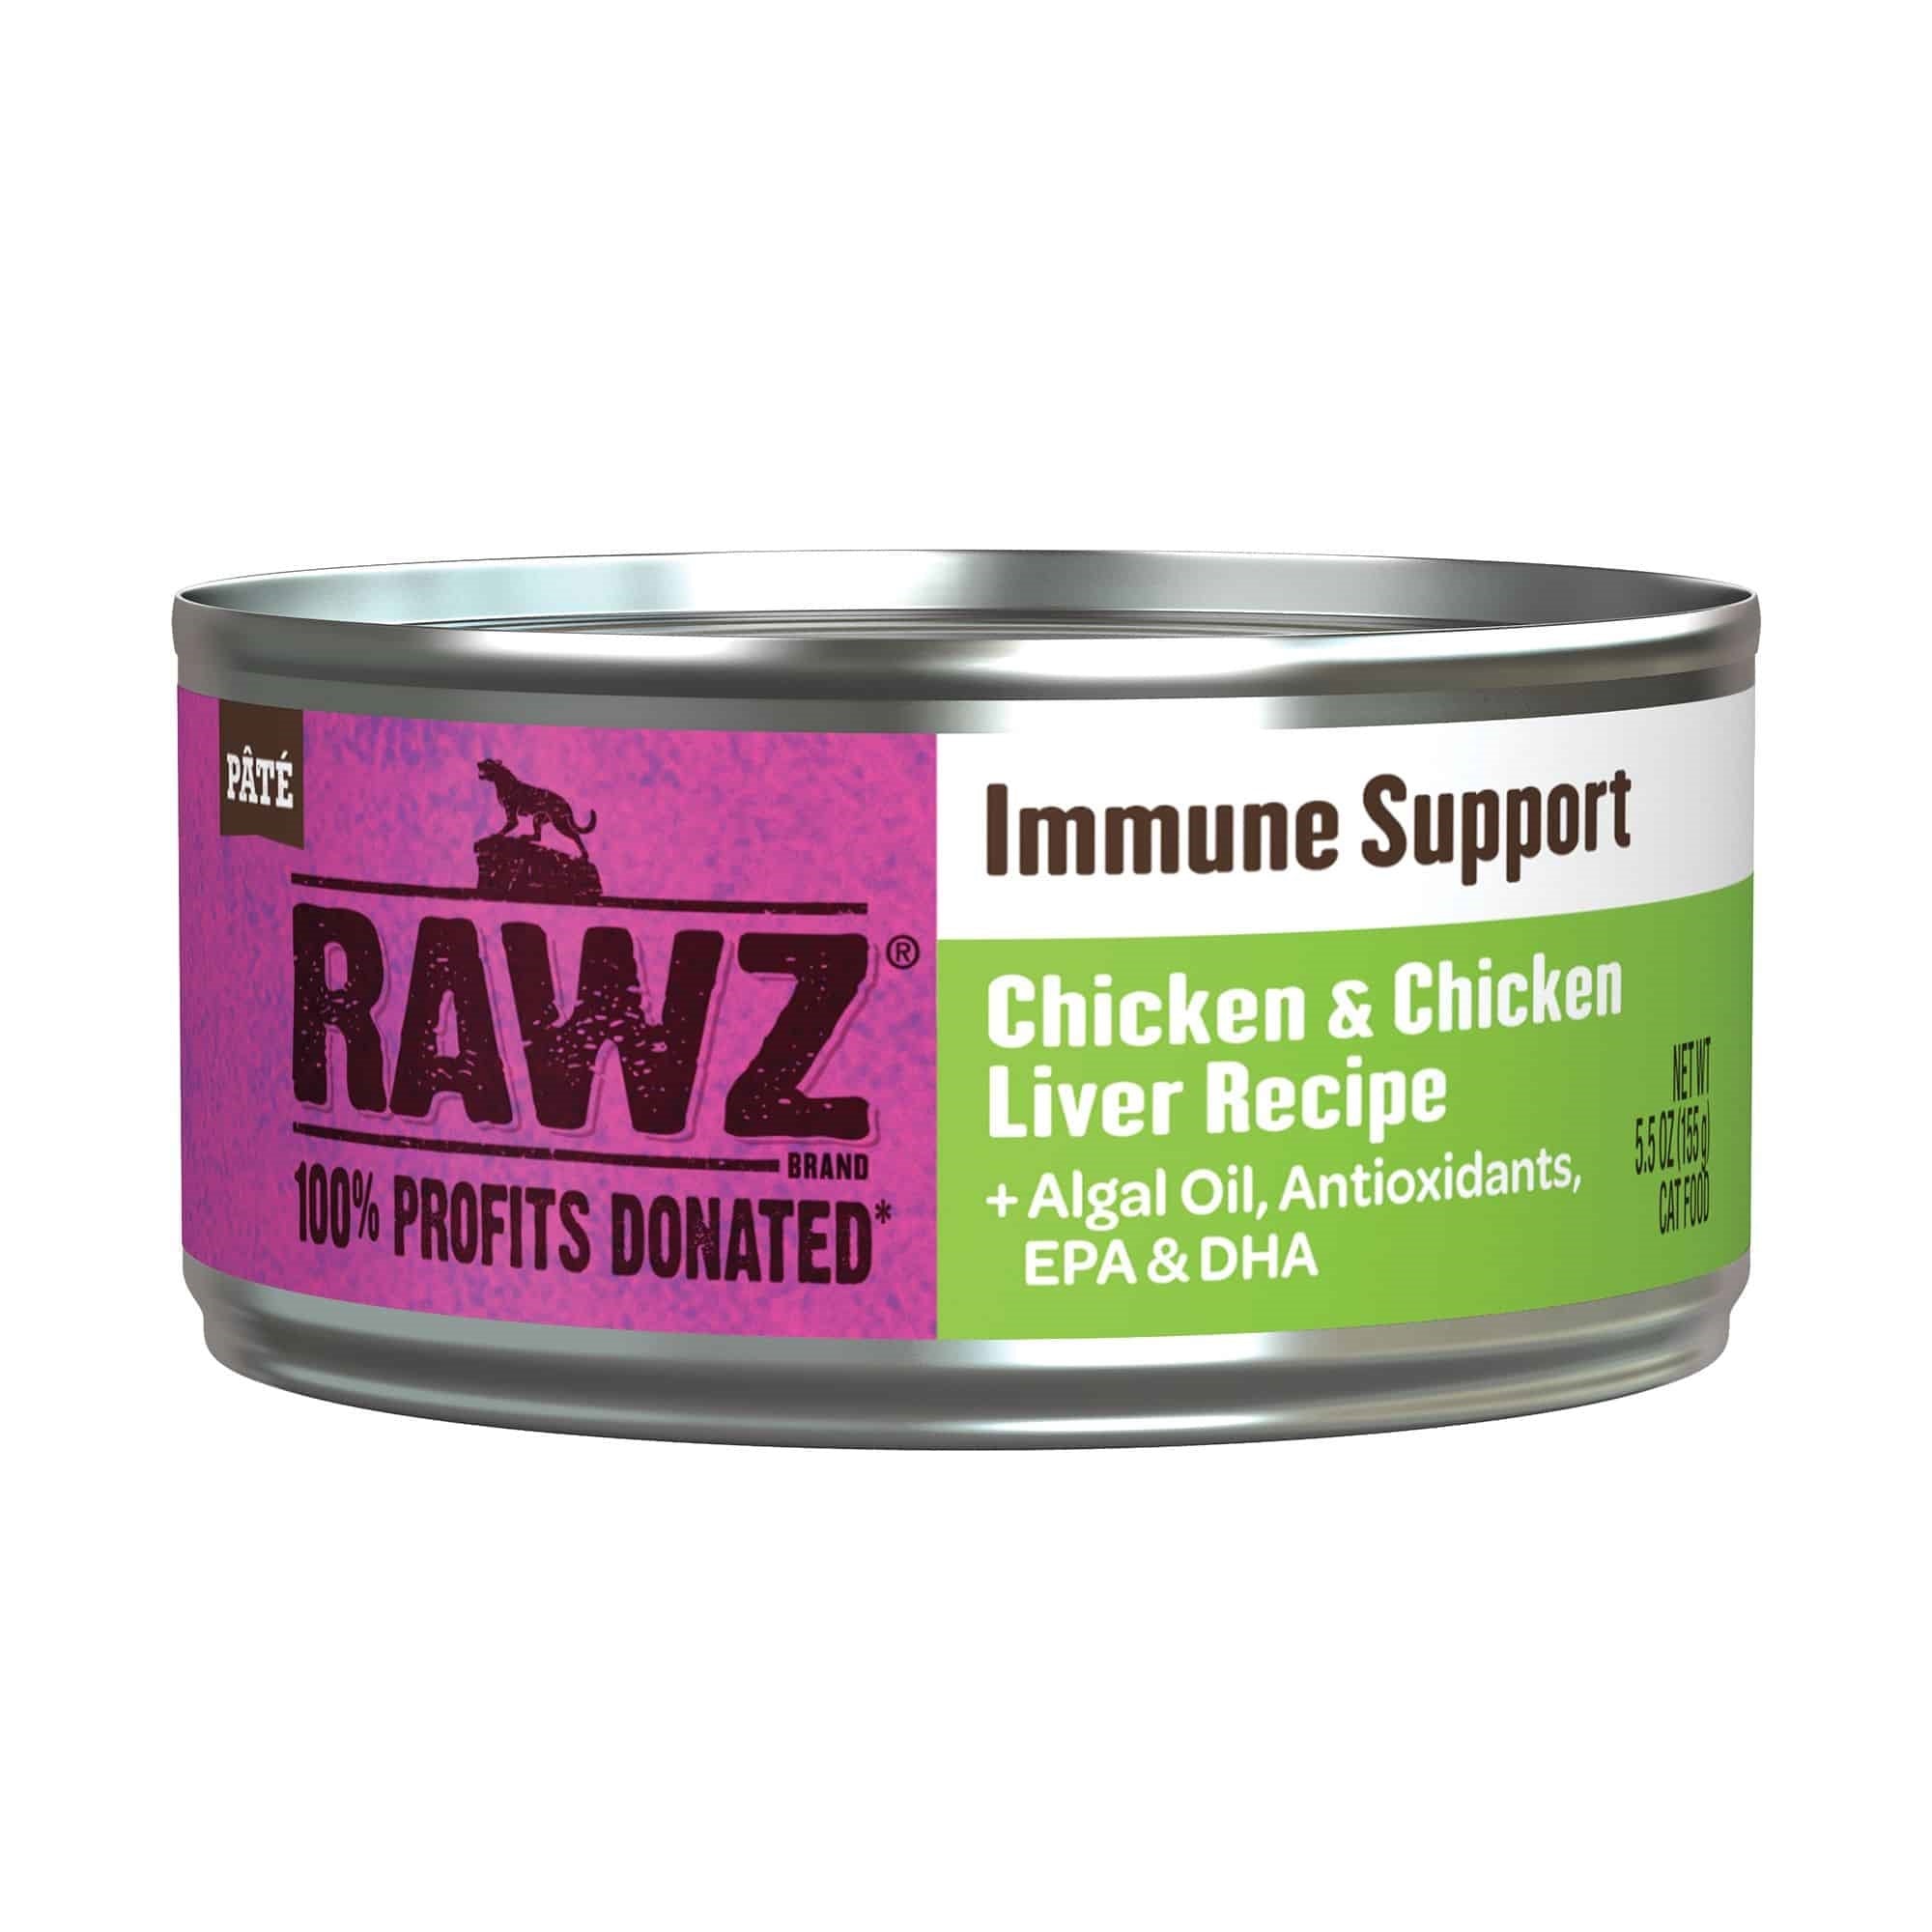 Chicken & Chicken Liver Pate Cat Food by Rawz, 5.5oz - Immune Support